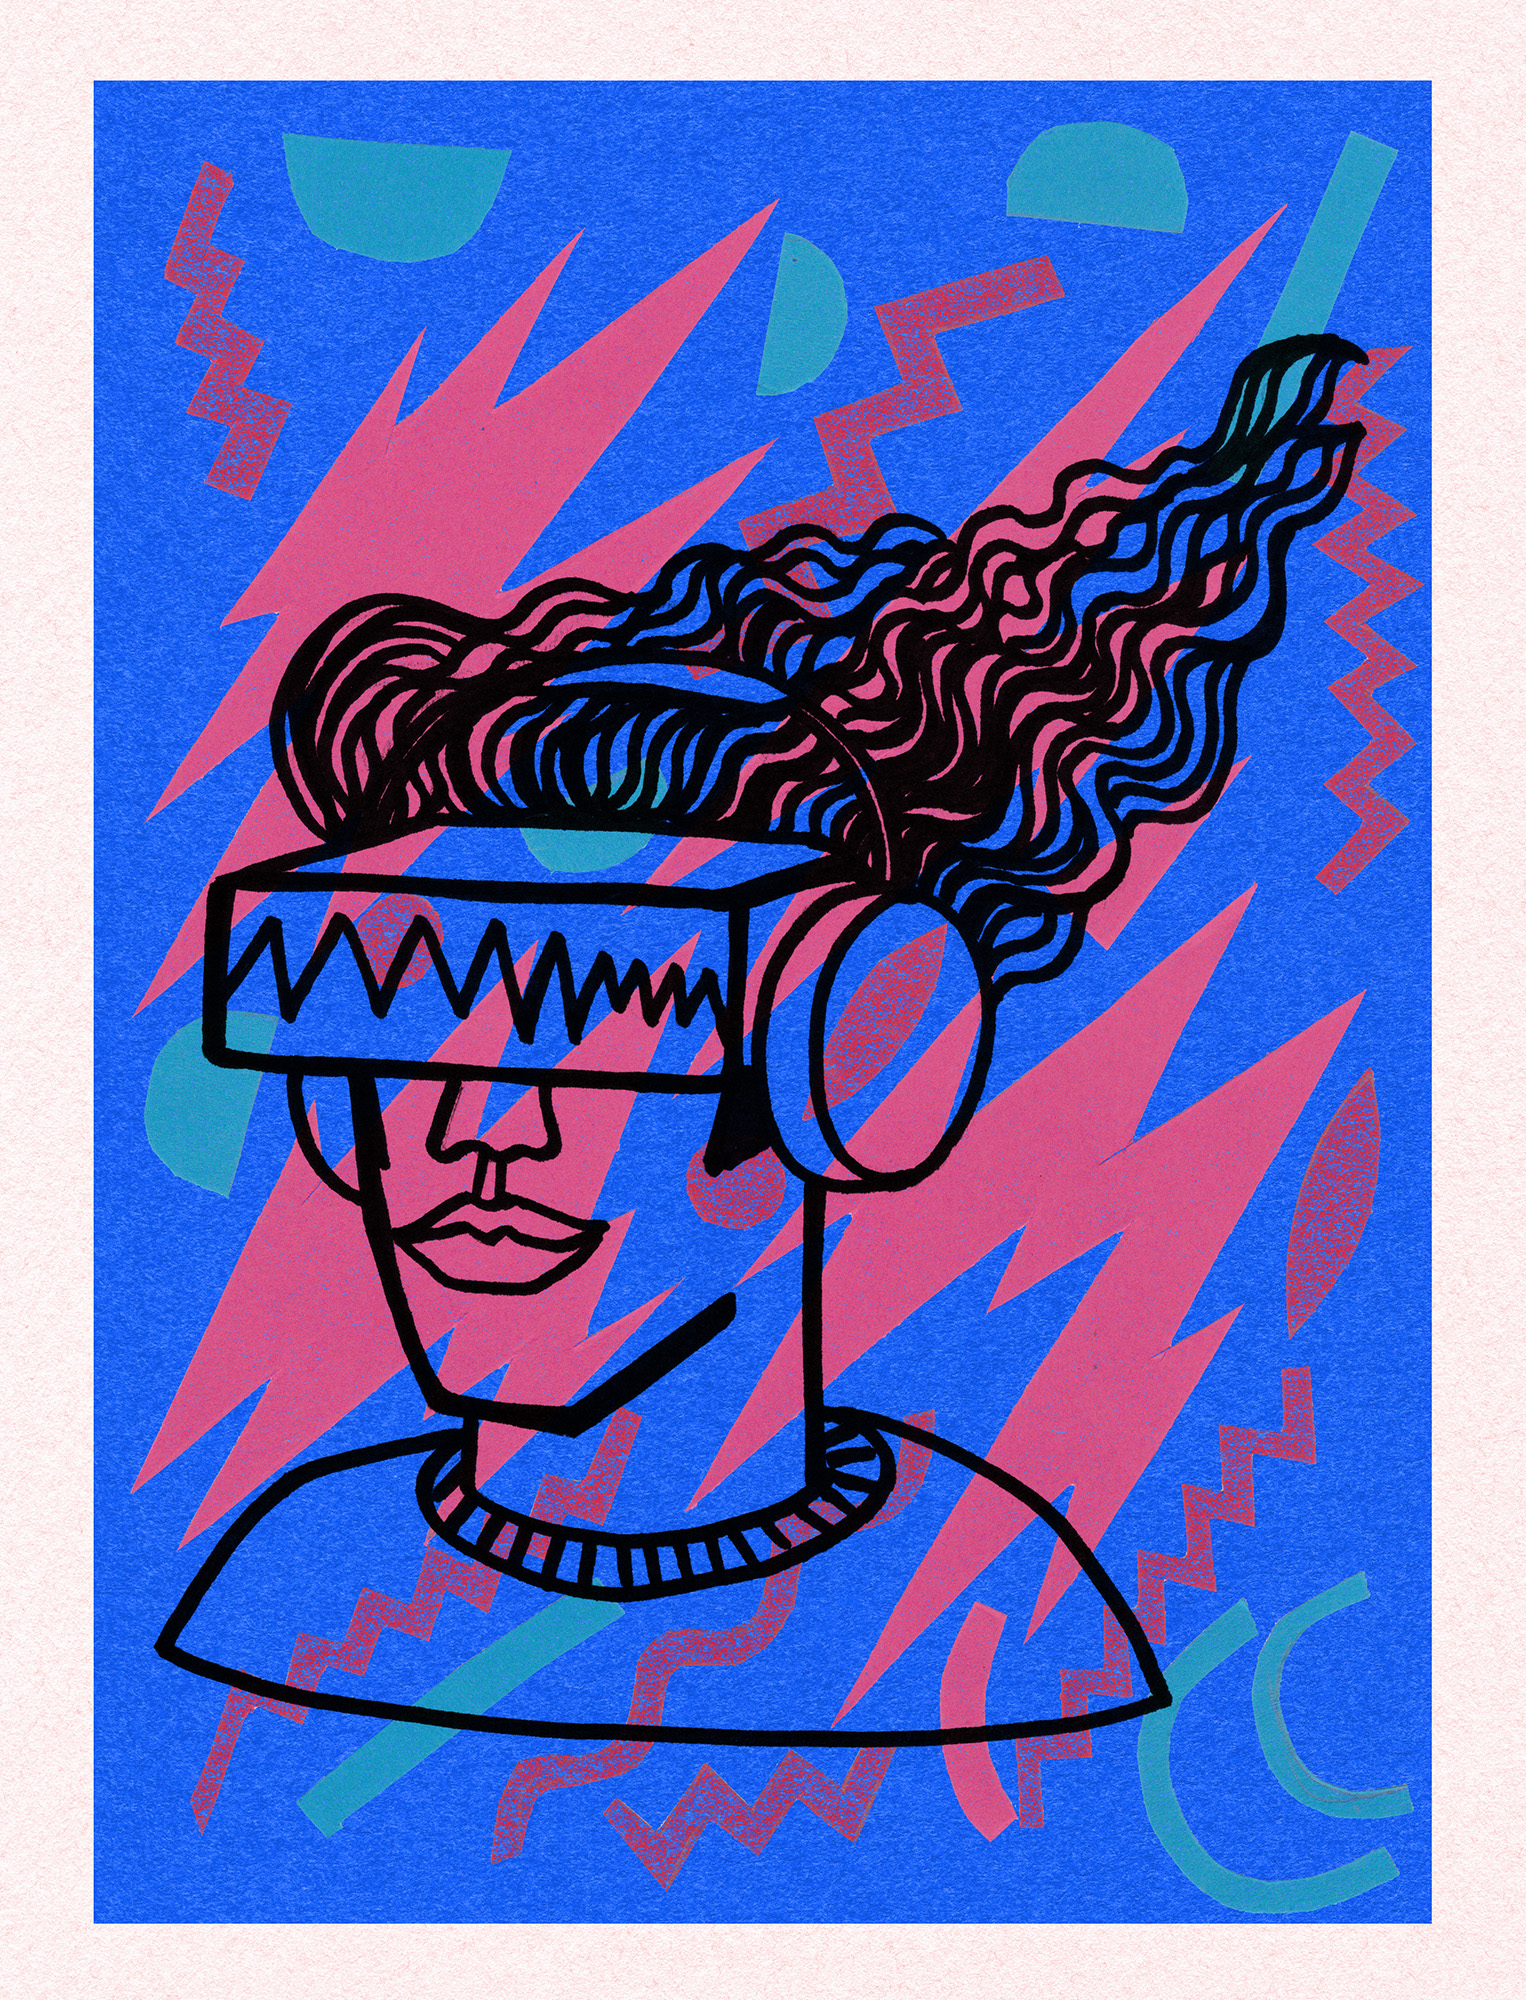 MTV VR Headphone Guy Illustration